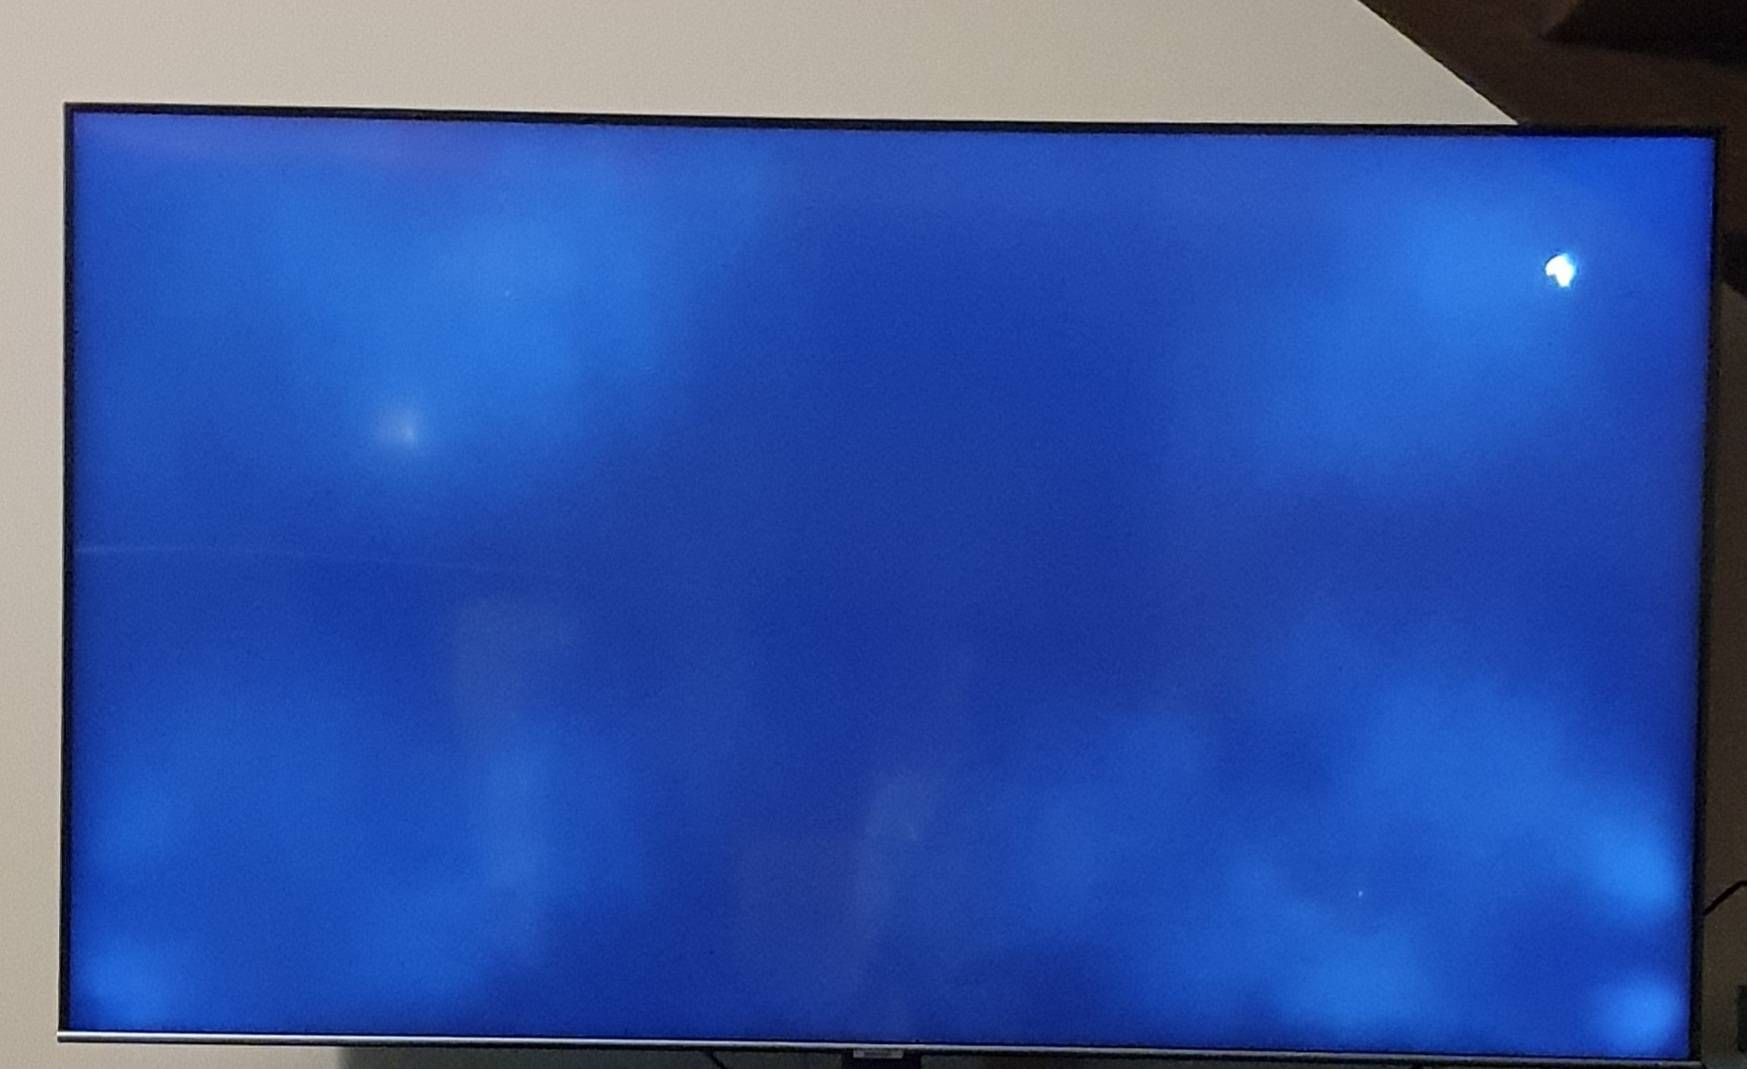 ciemne paski na ekranie telewizora na krawędziach bocznych - Samsung  Community